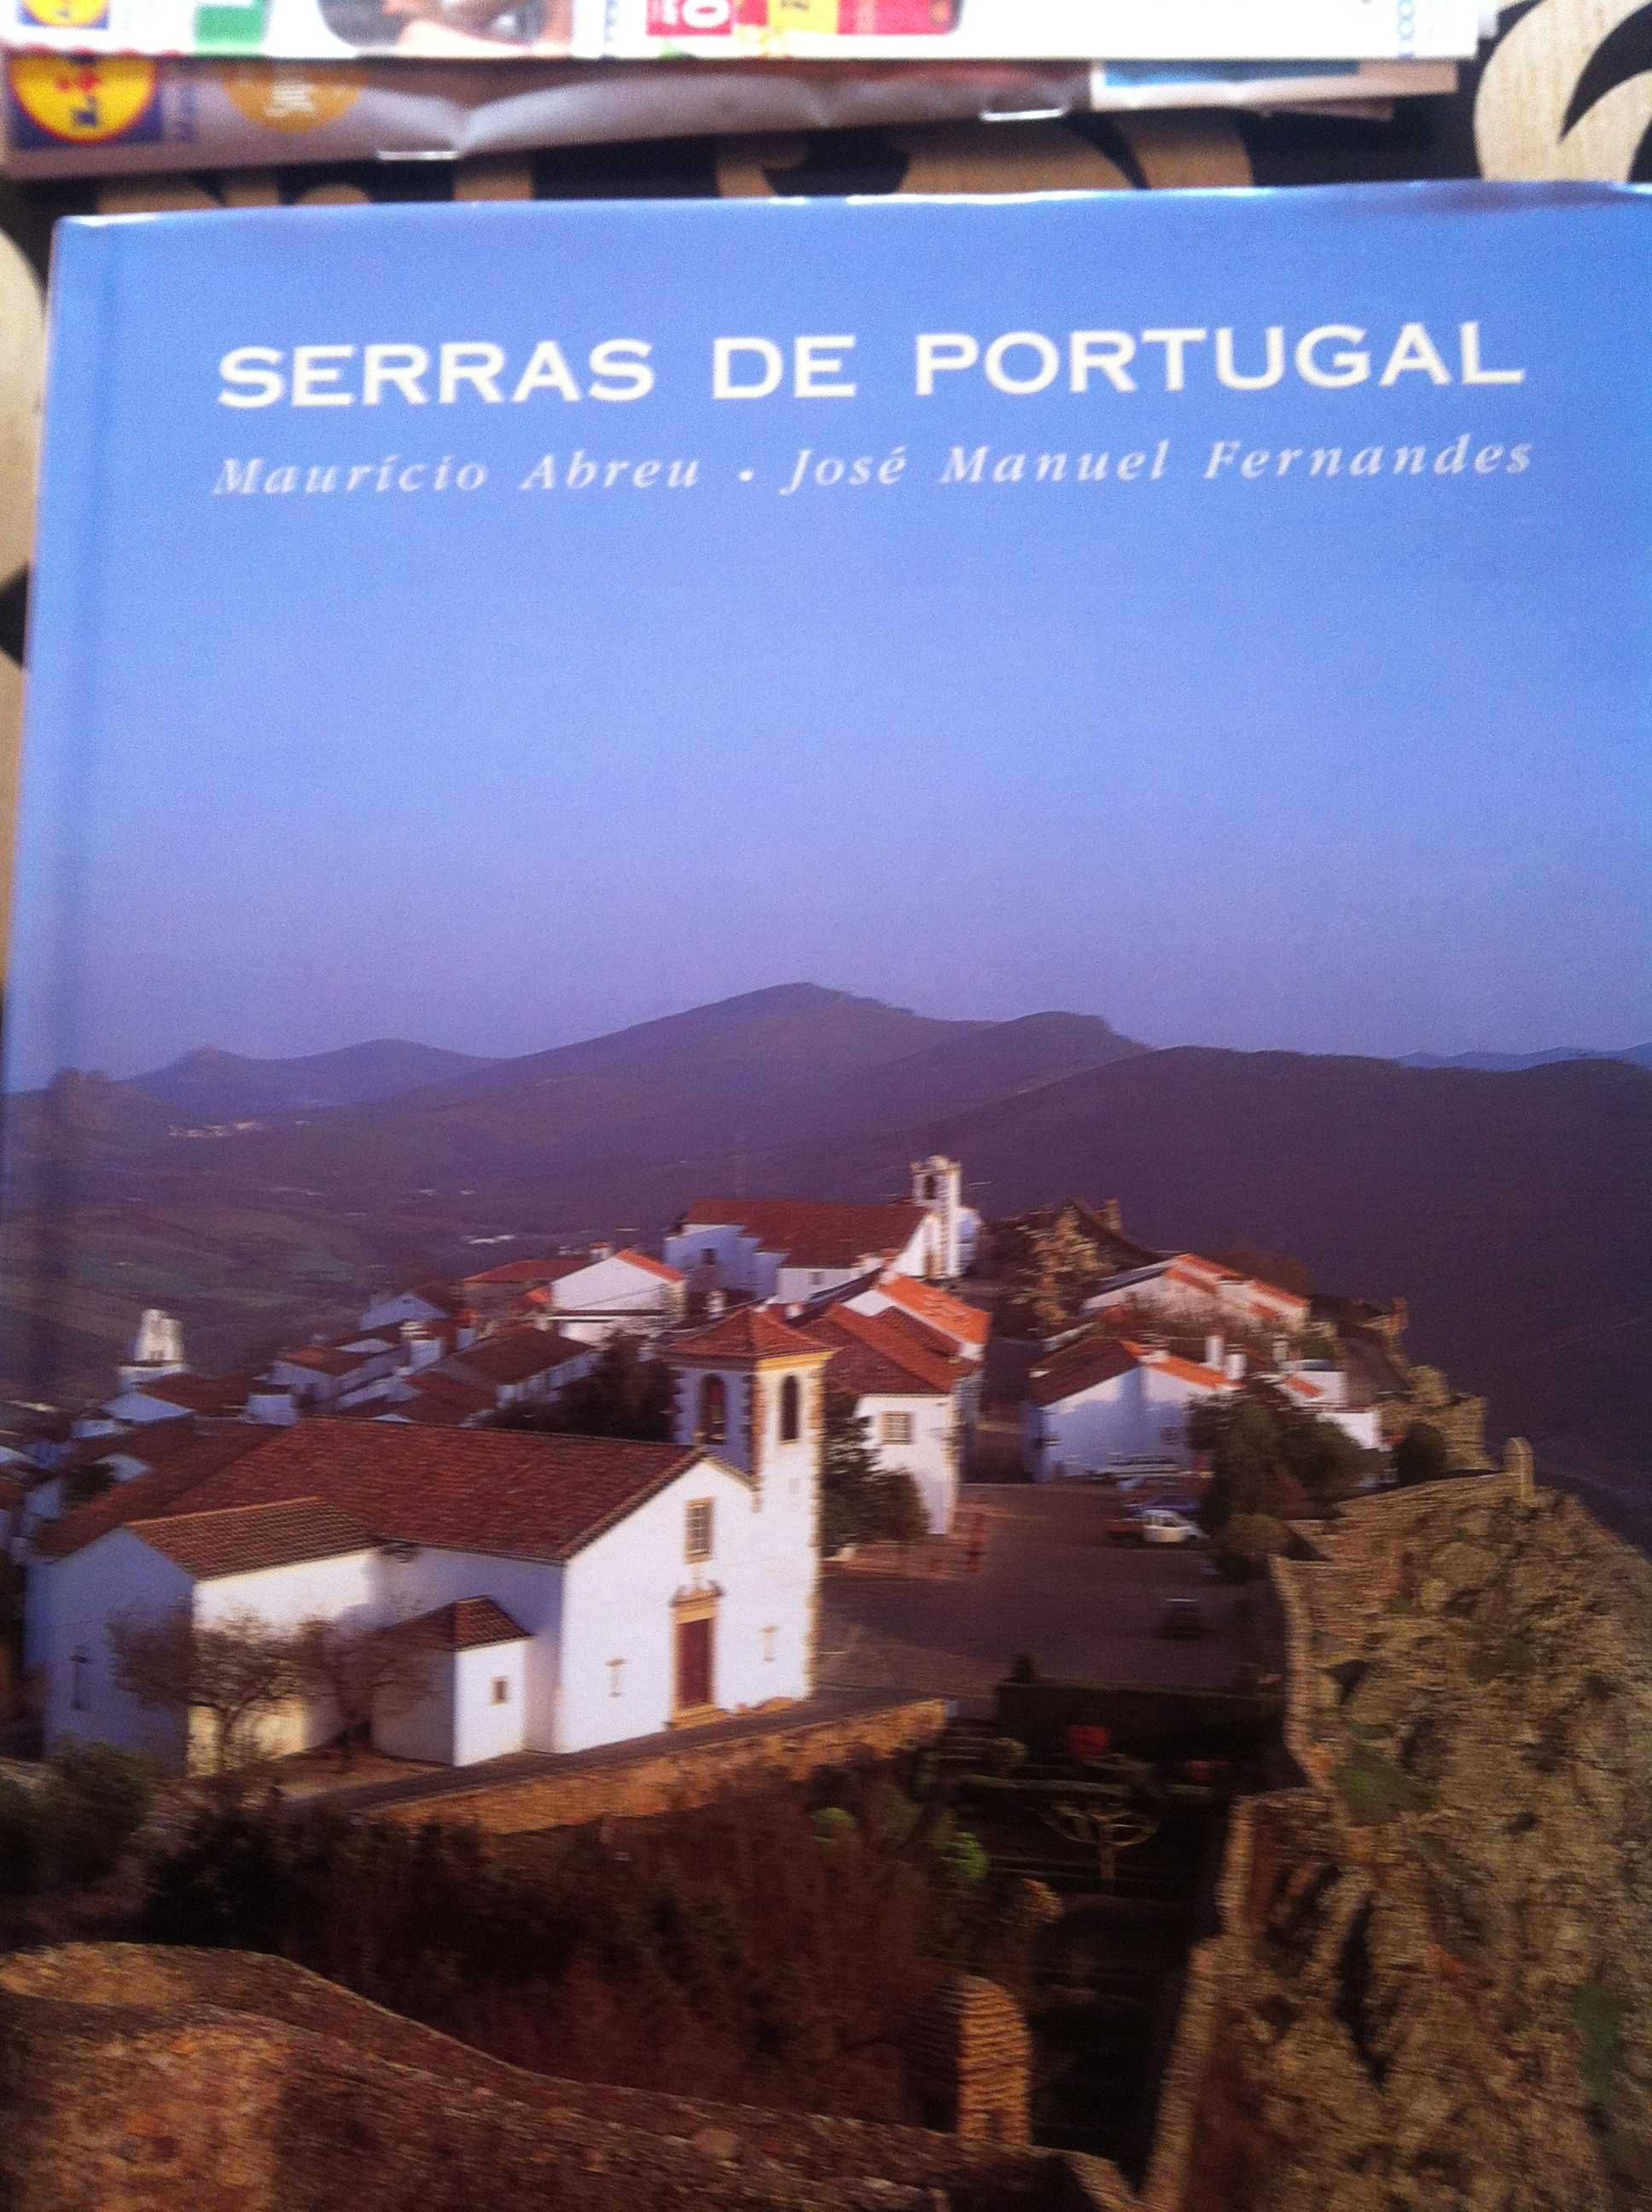 Serras de Portugal